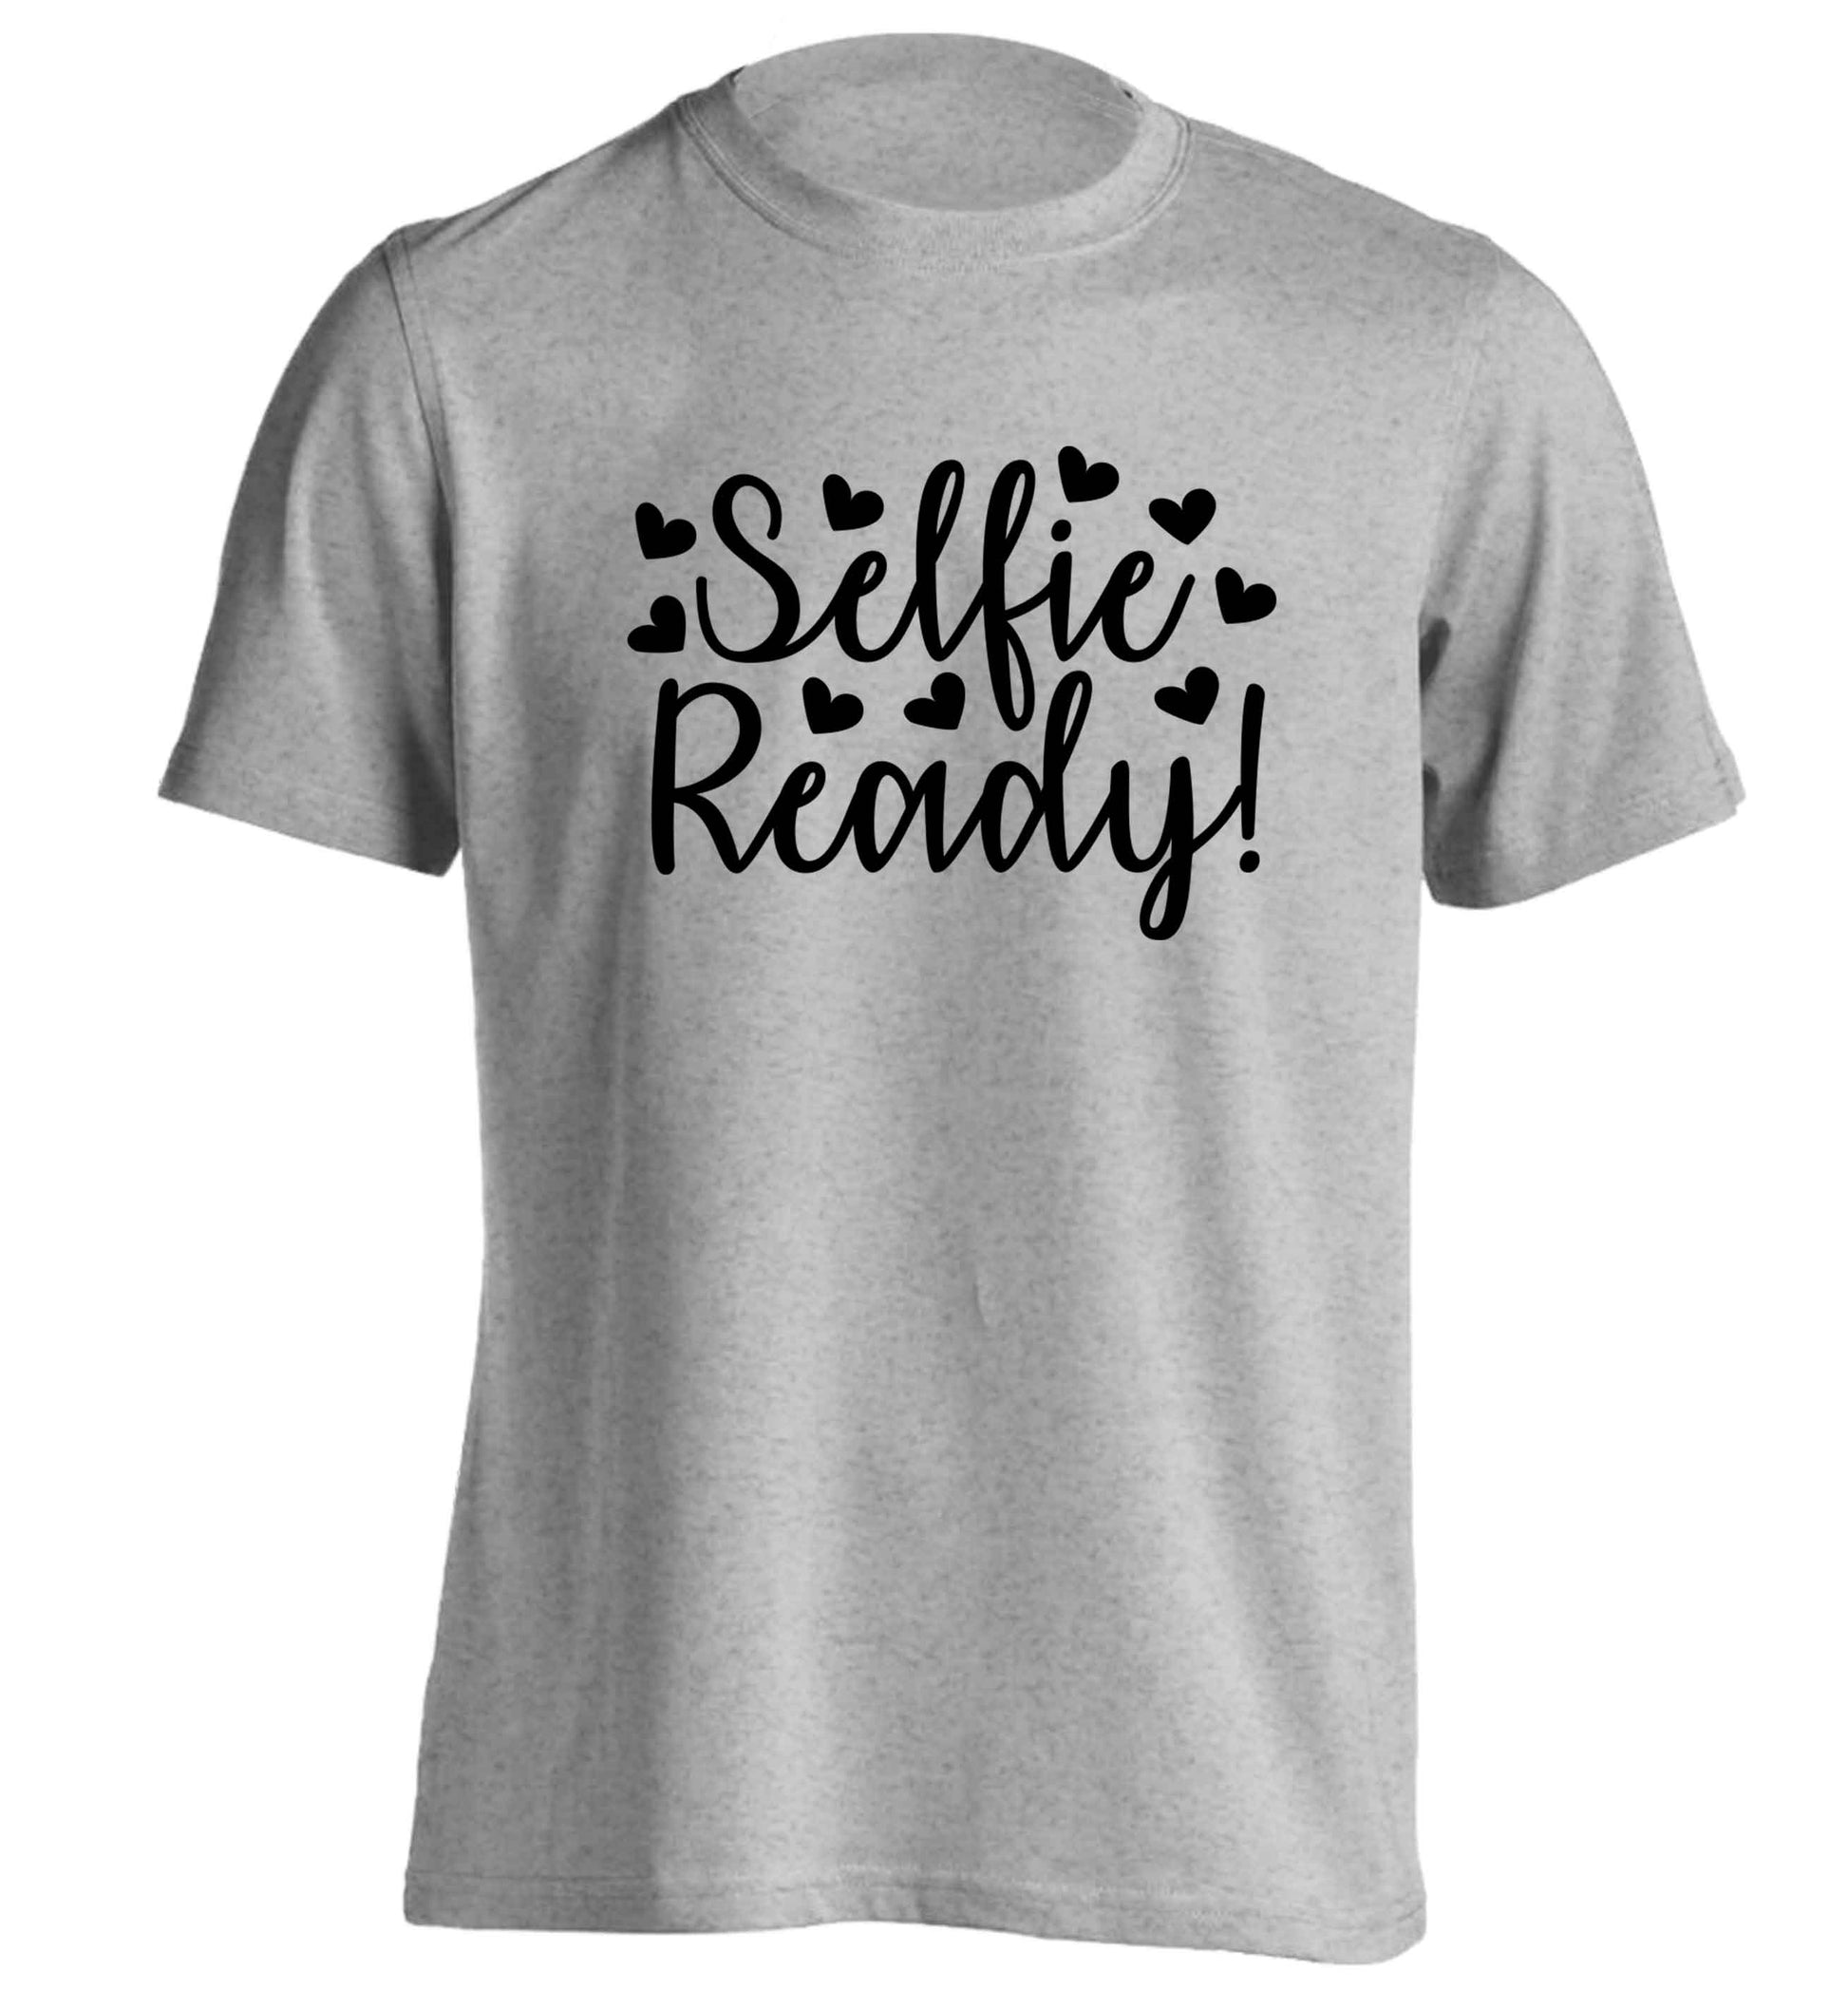 Selfie ready adults unisex grey Tshirt 2XL